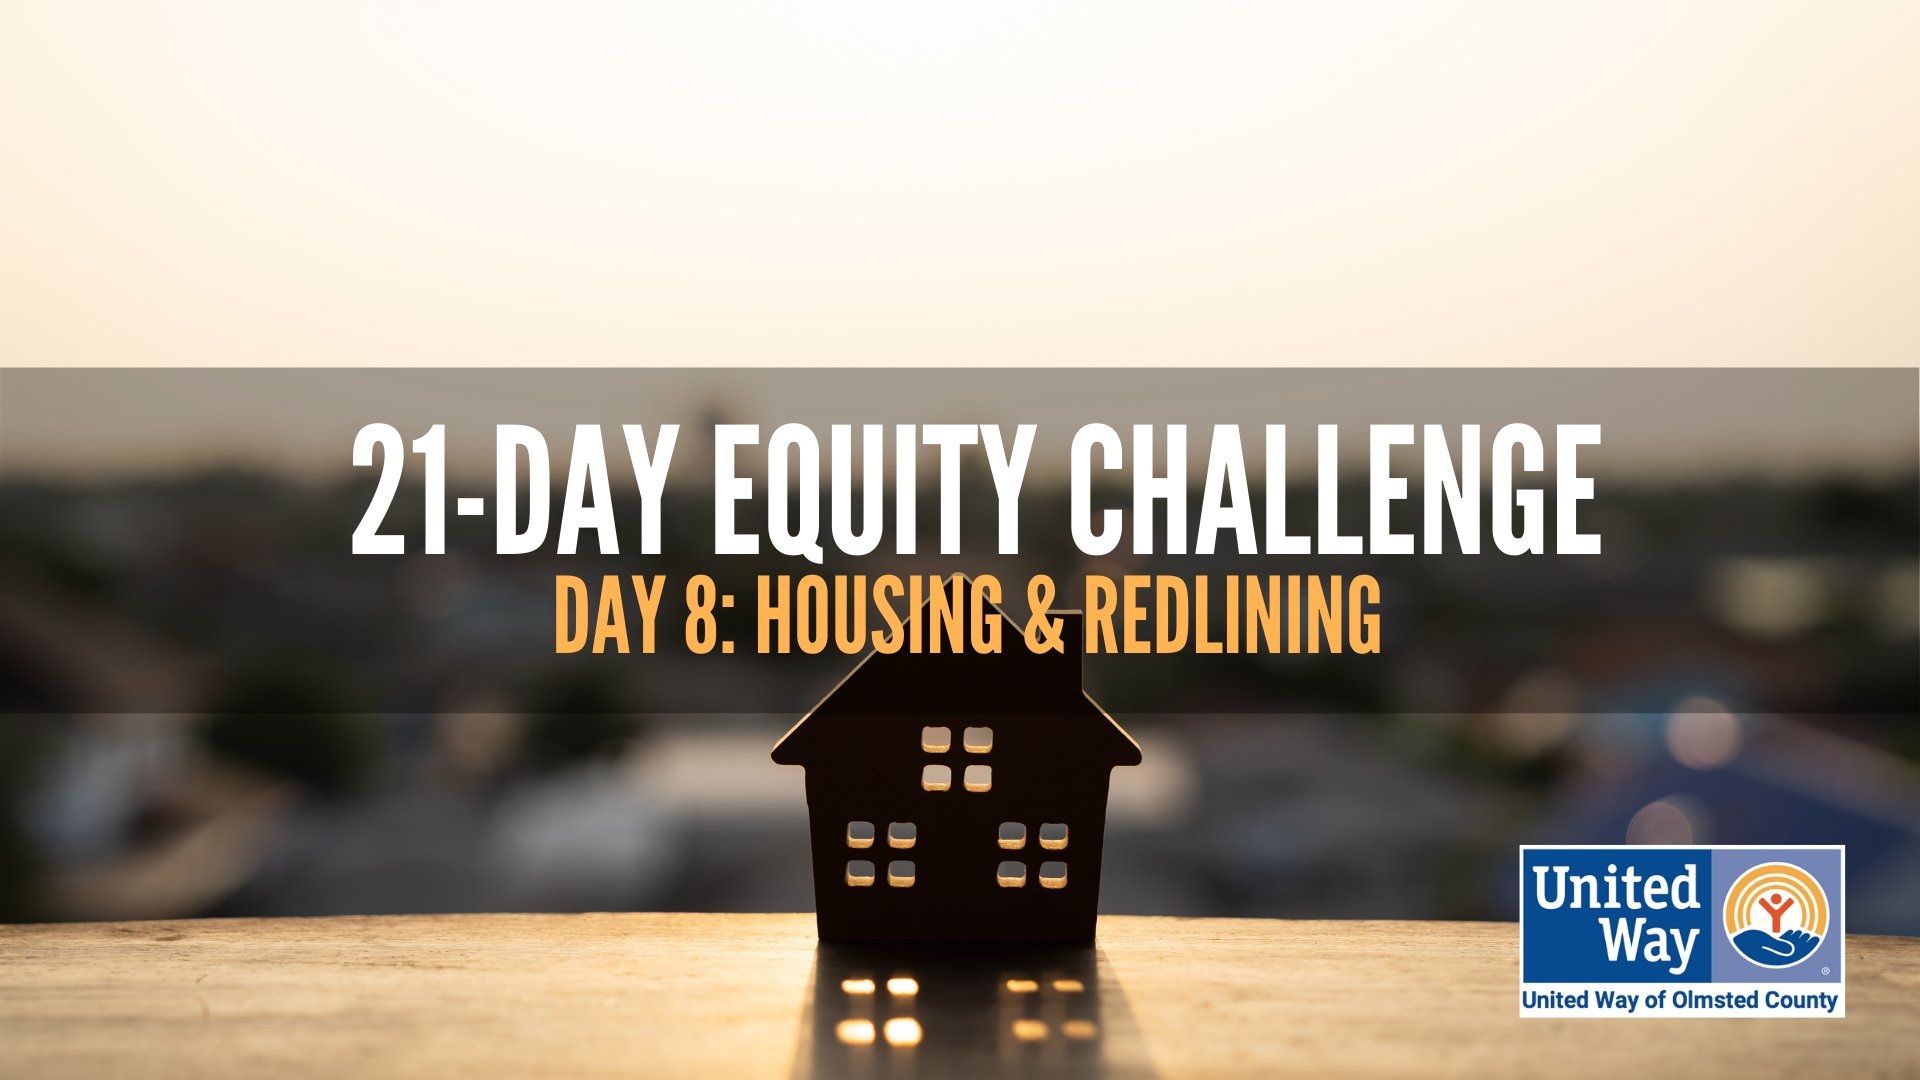 Day 8: Housing & Redlining